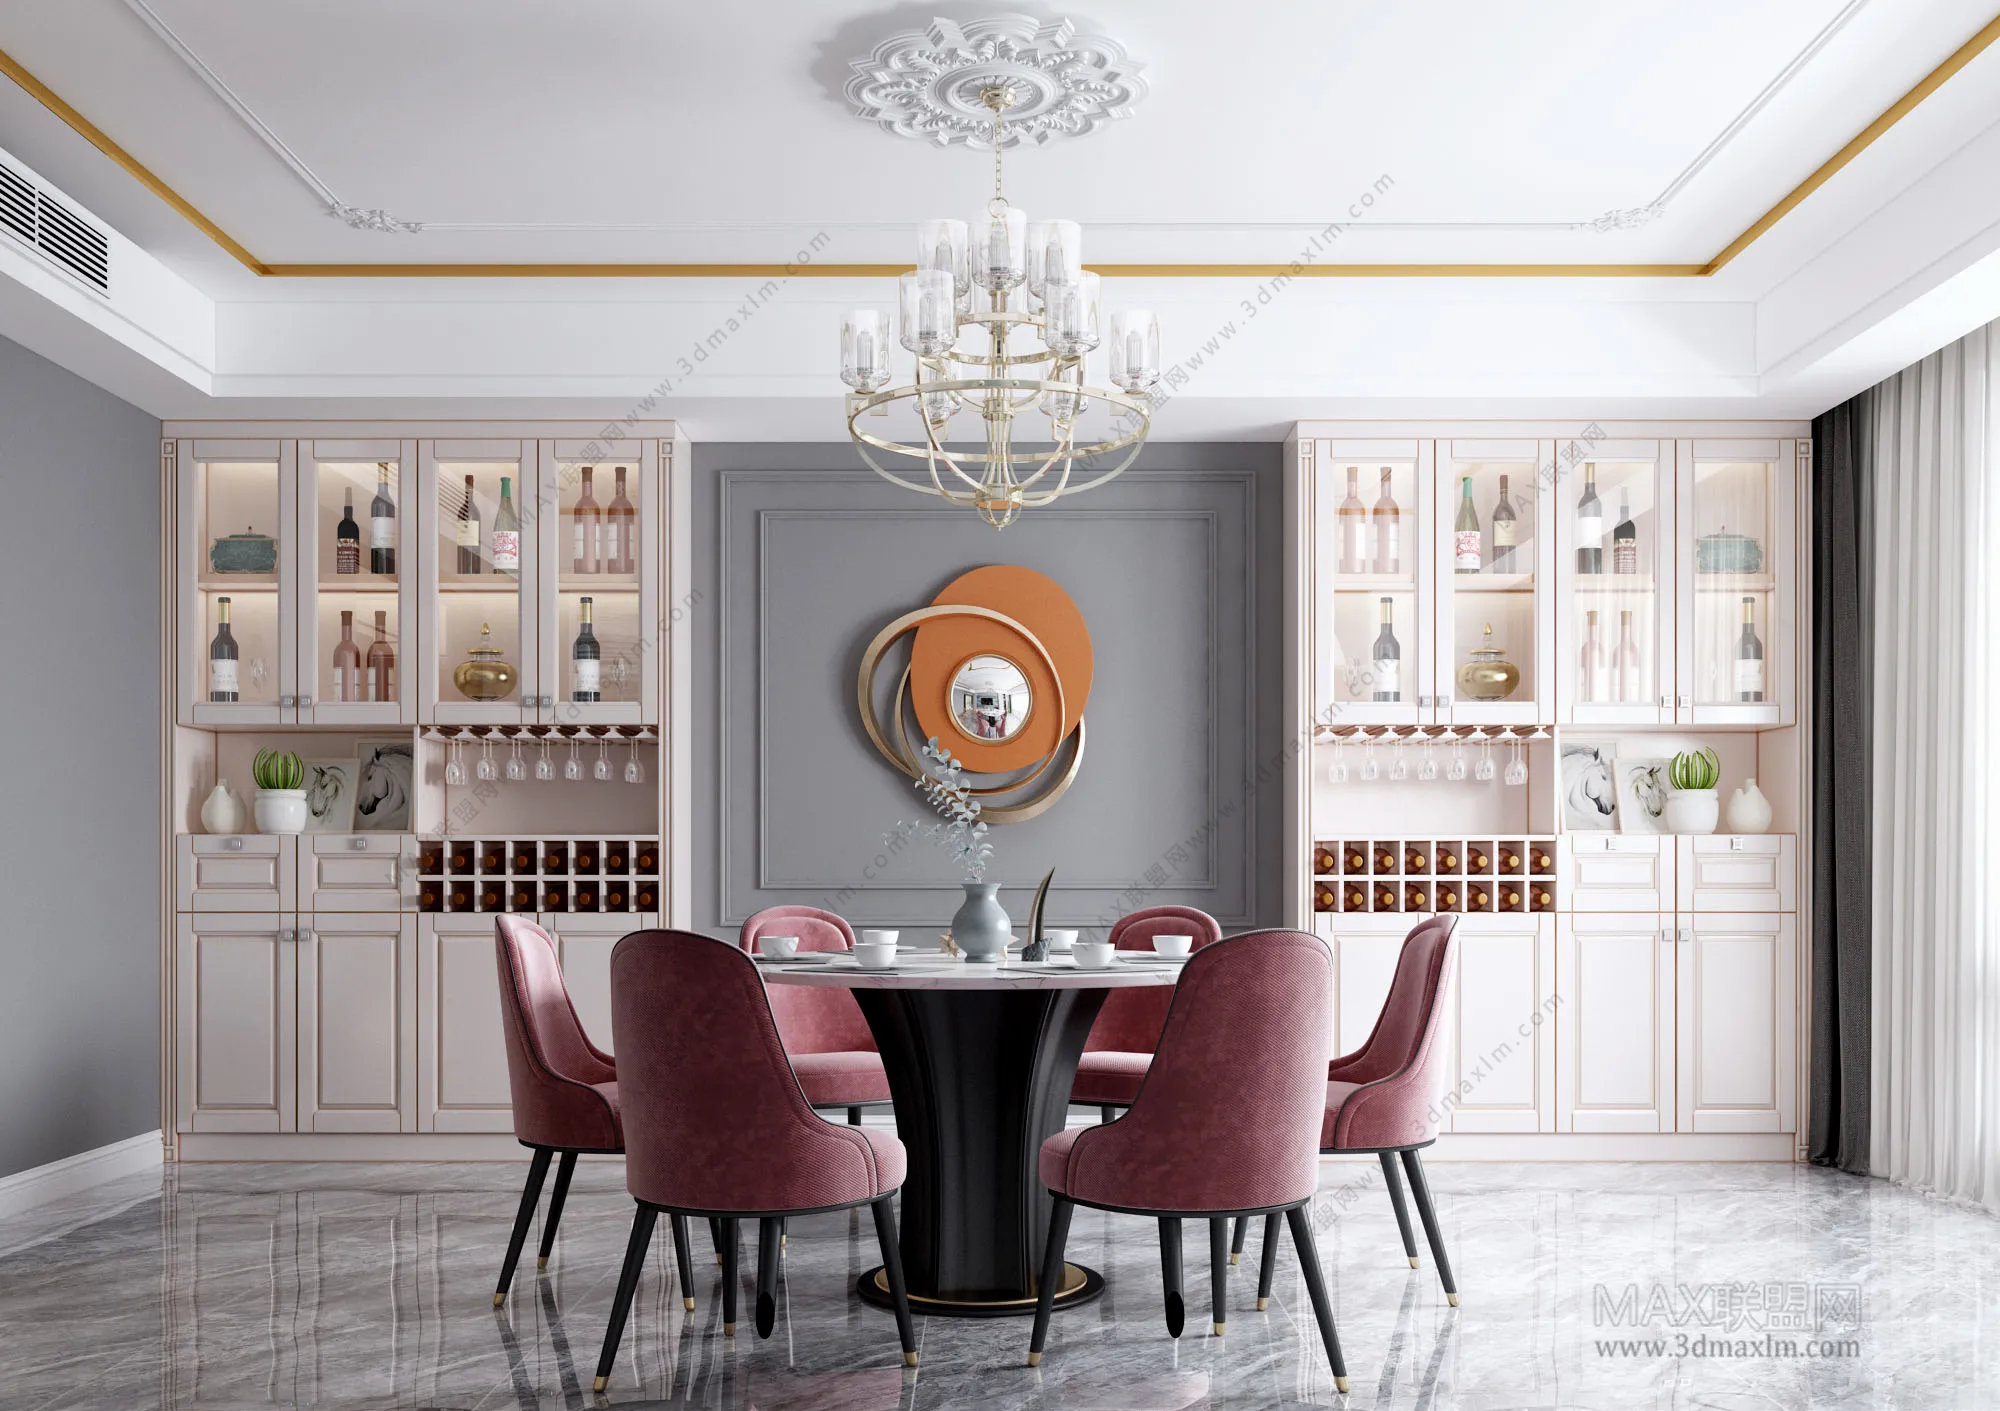 Dining room – Interior Design – European Design – 002